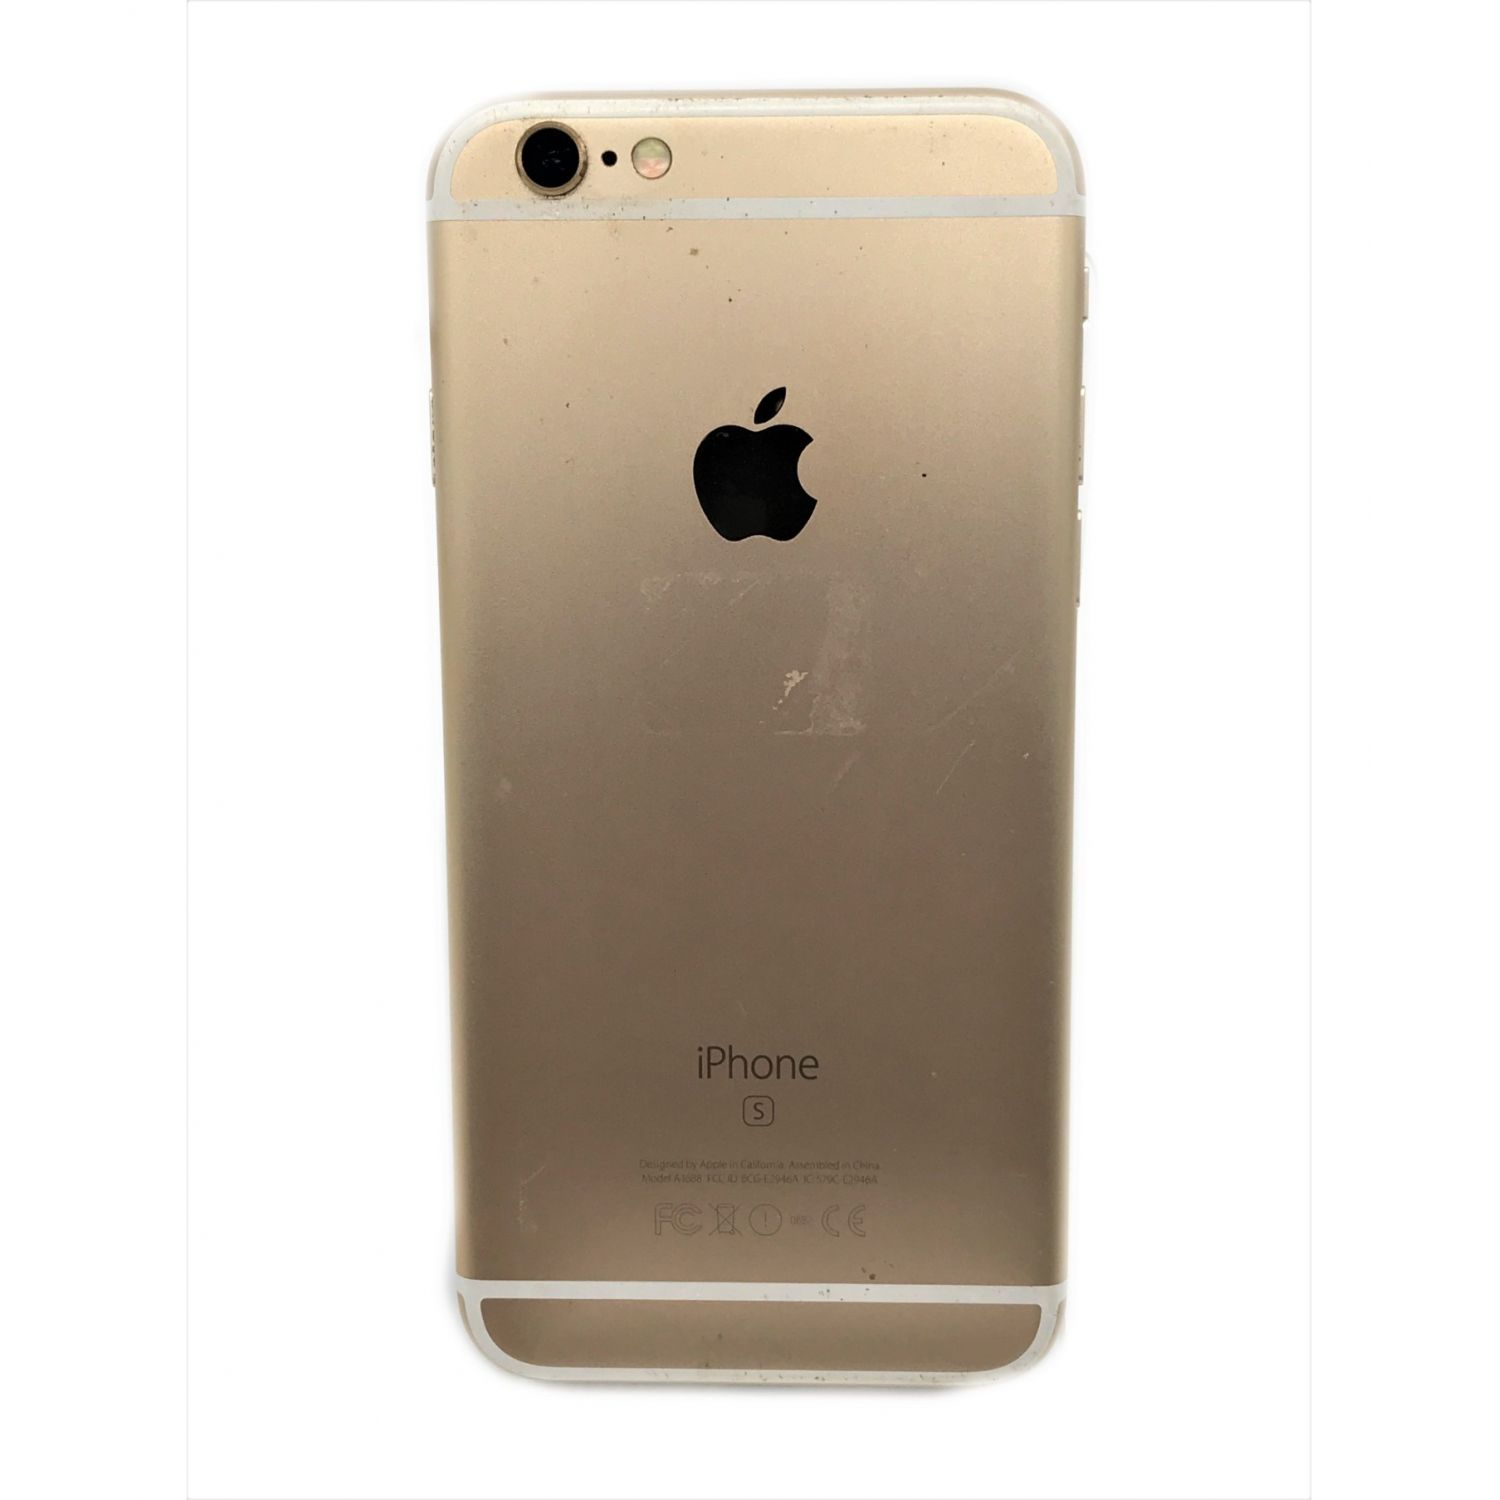 Apple (アップル) iPhone 6s 64GB MKQQ2J/A au iOS ゴールド